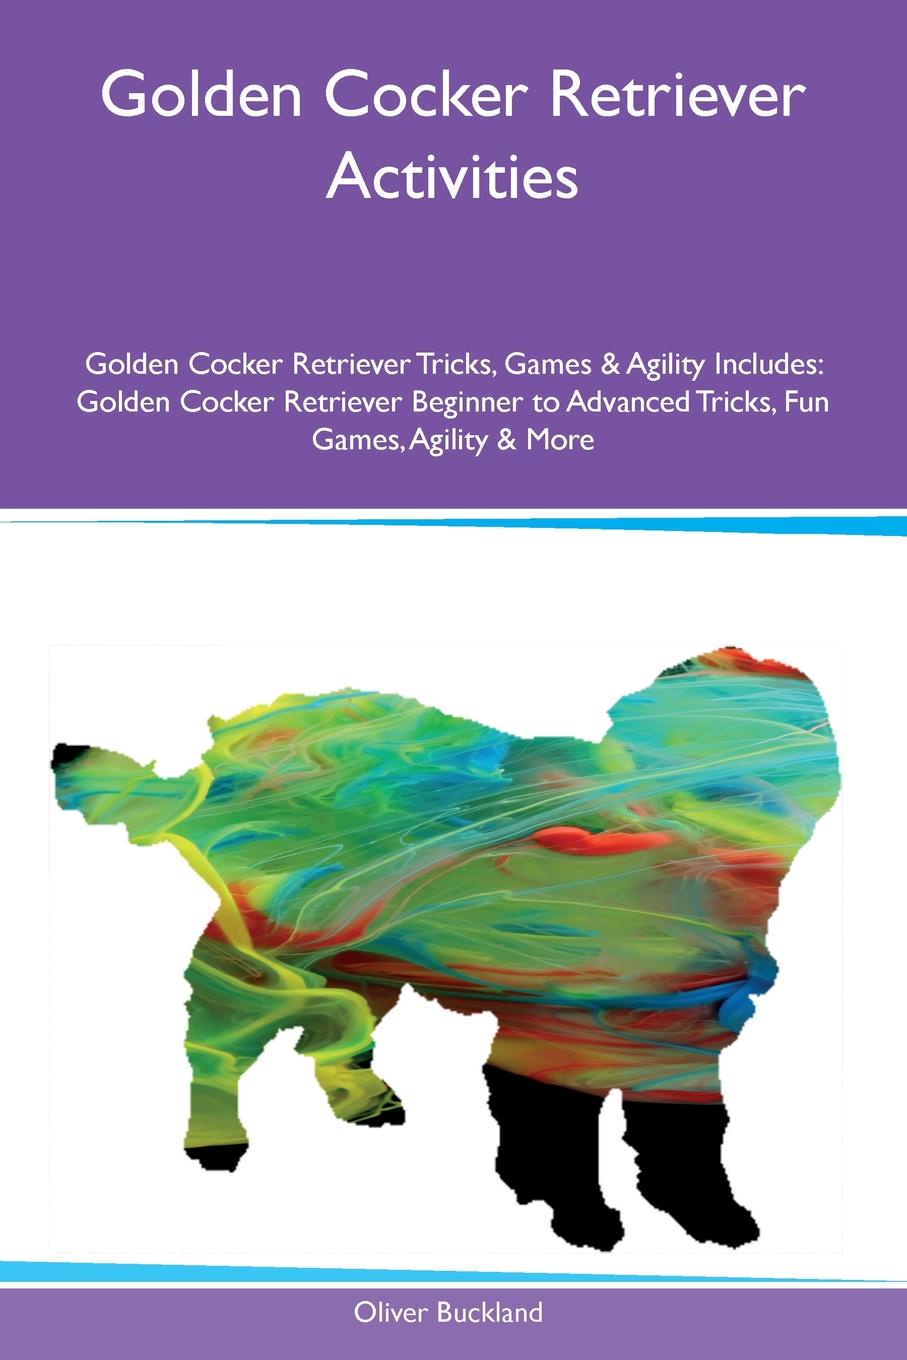 Golden Cocker Retriever Activities Golden Cocker Retriever Tricks, Games & Agility Includes. Golden Cocker Retriever Beginner to Advanced Tricks, Fun Games, Agility & More